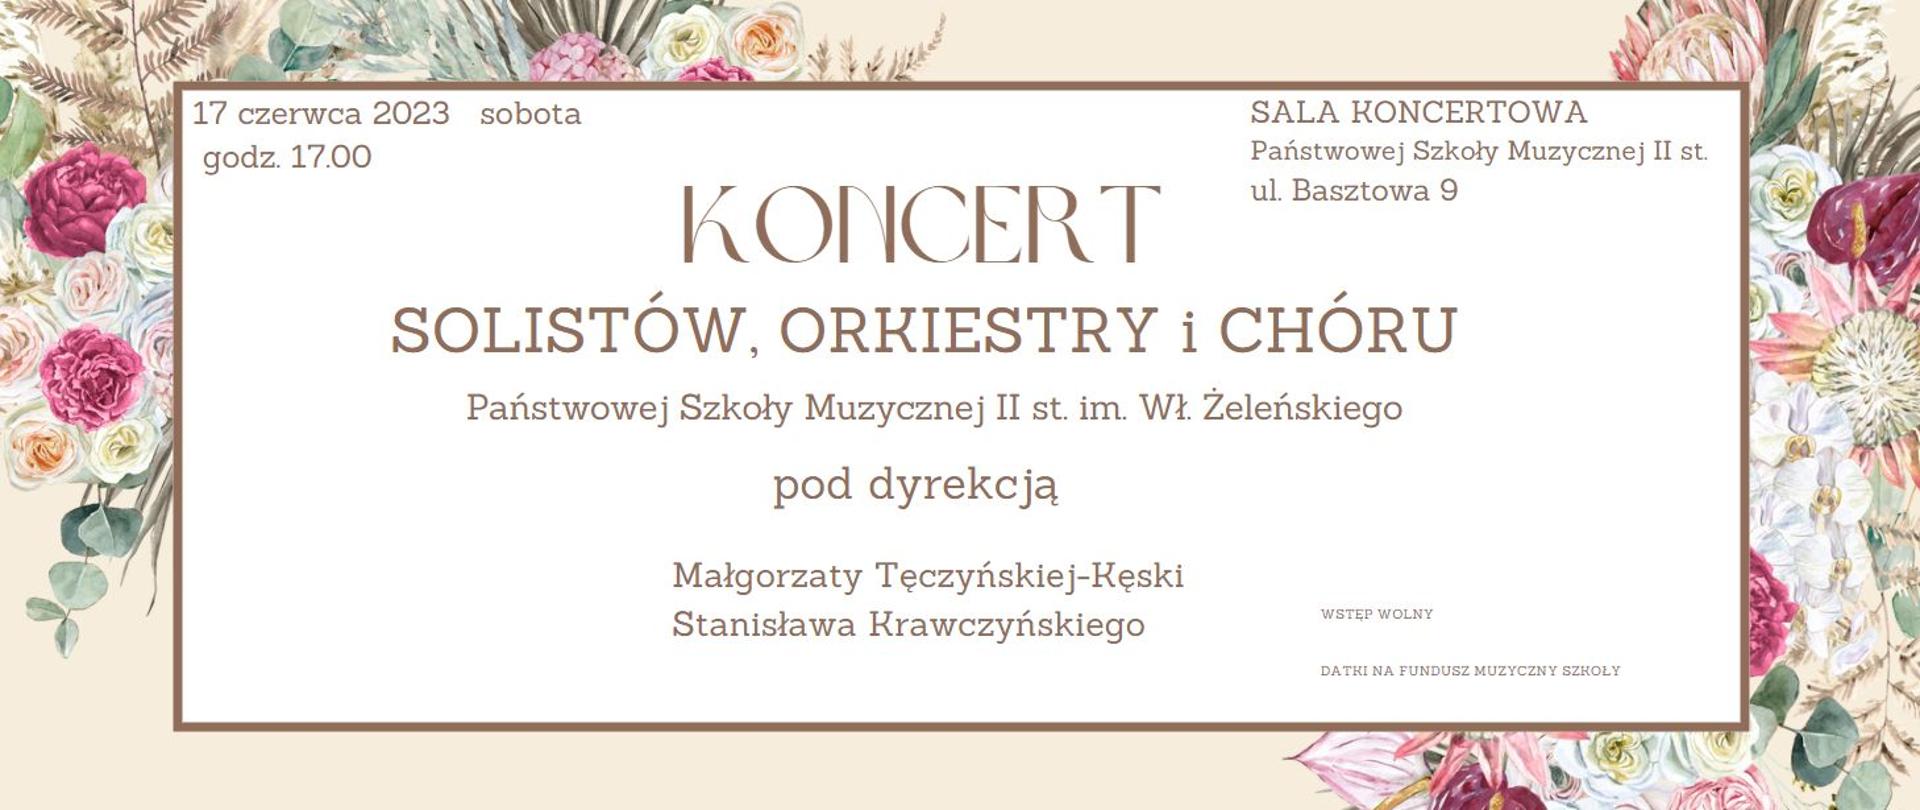 Na kwiatowym tle napis Koncert solistów,orkiestry i chóru PSM II st. 17.06.2023